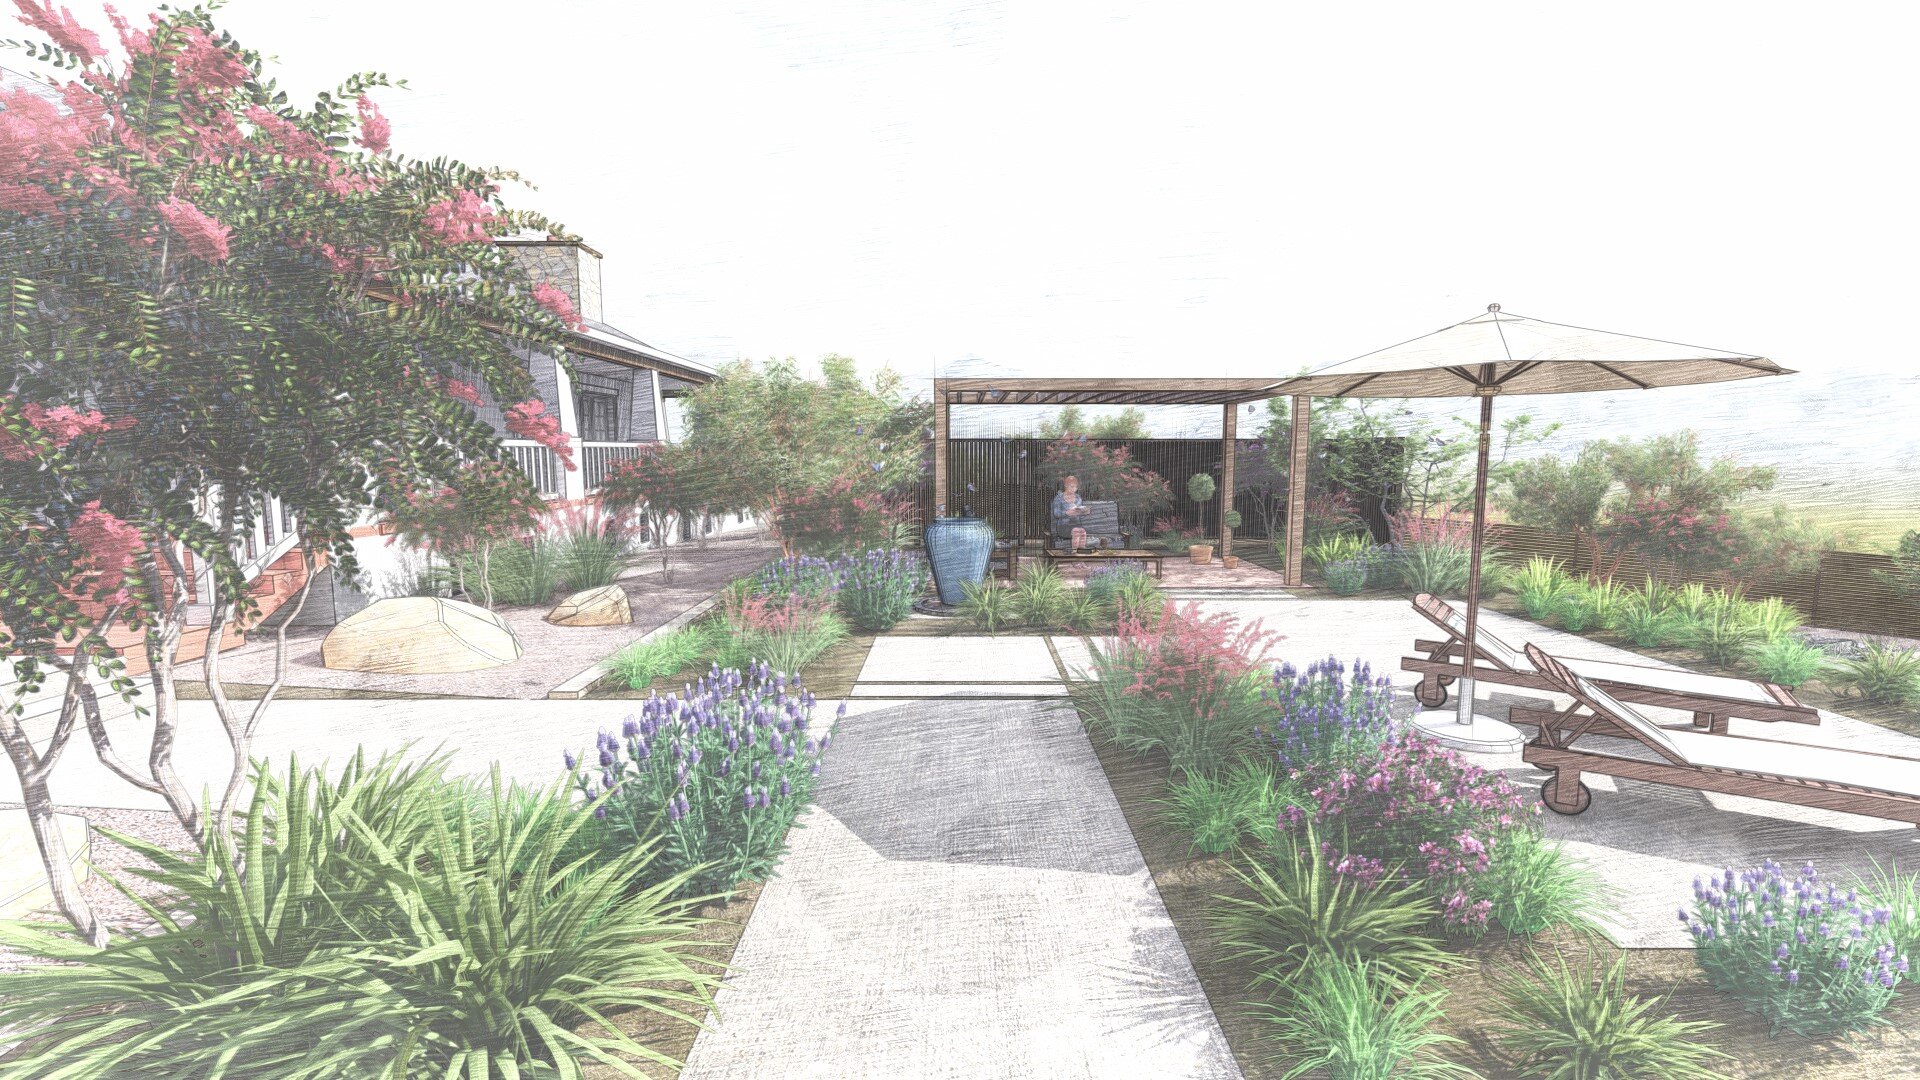 Conemporary Living Garden Design - Fairbanks Ranch, California